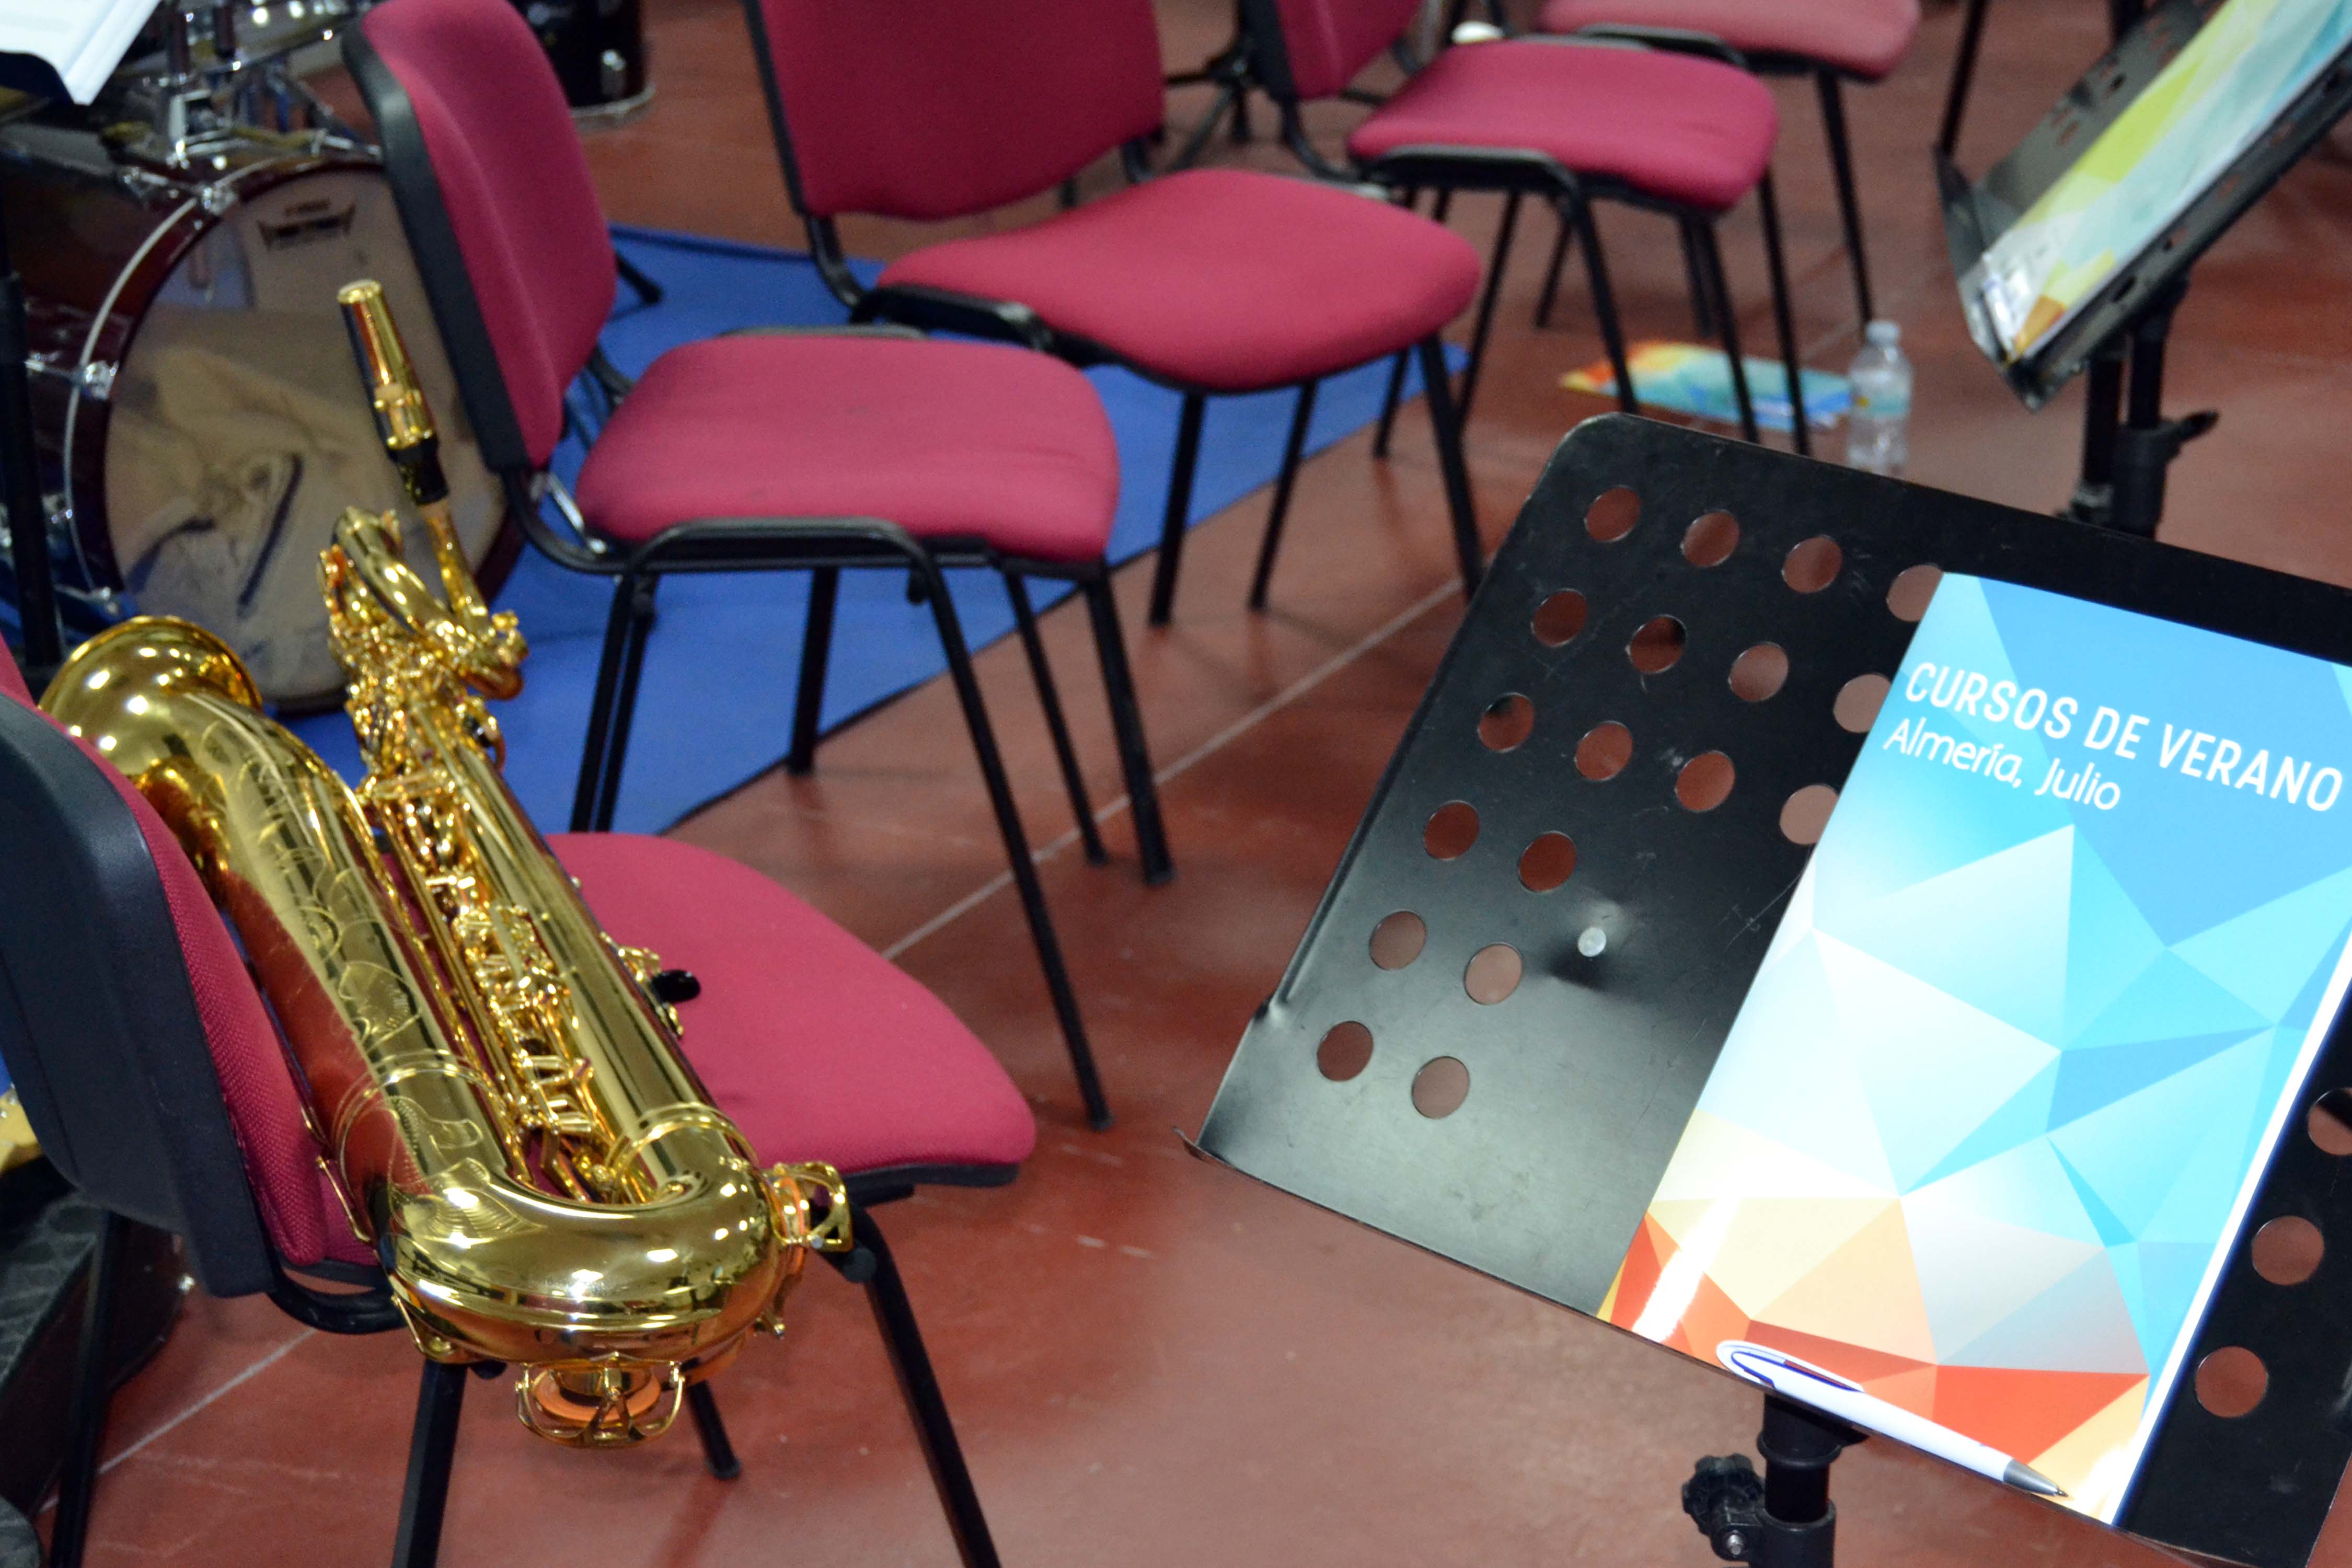 Los Cursos de Verano ofertan un taller para mejorar las habilidades técnicas y musicales de los instrumentistas